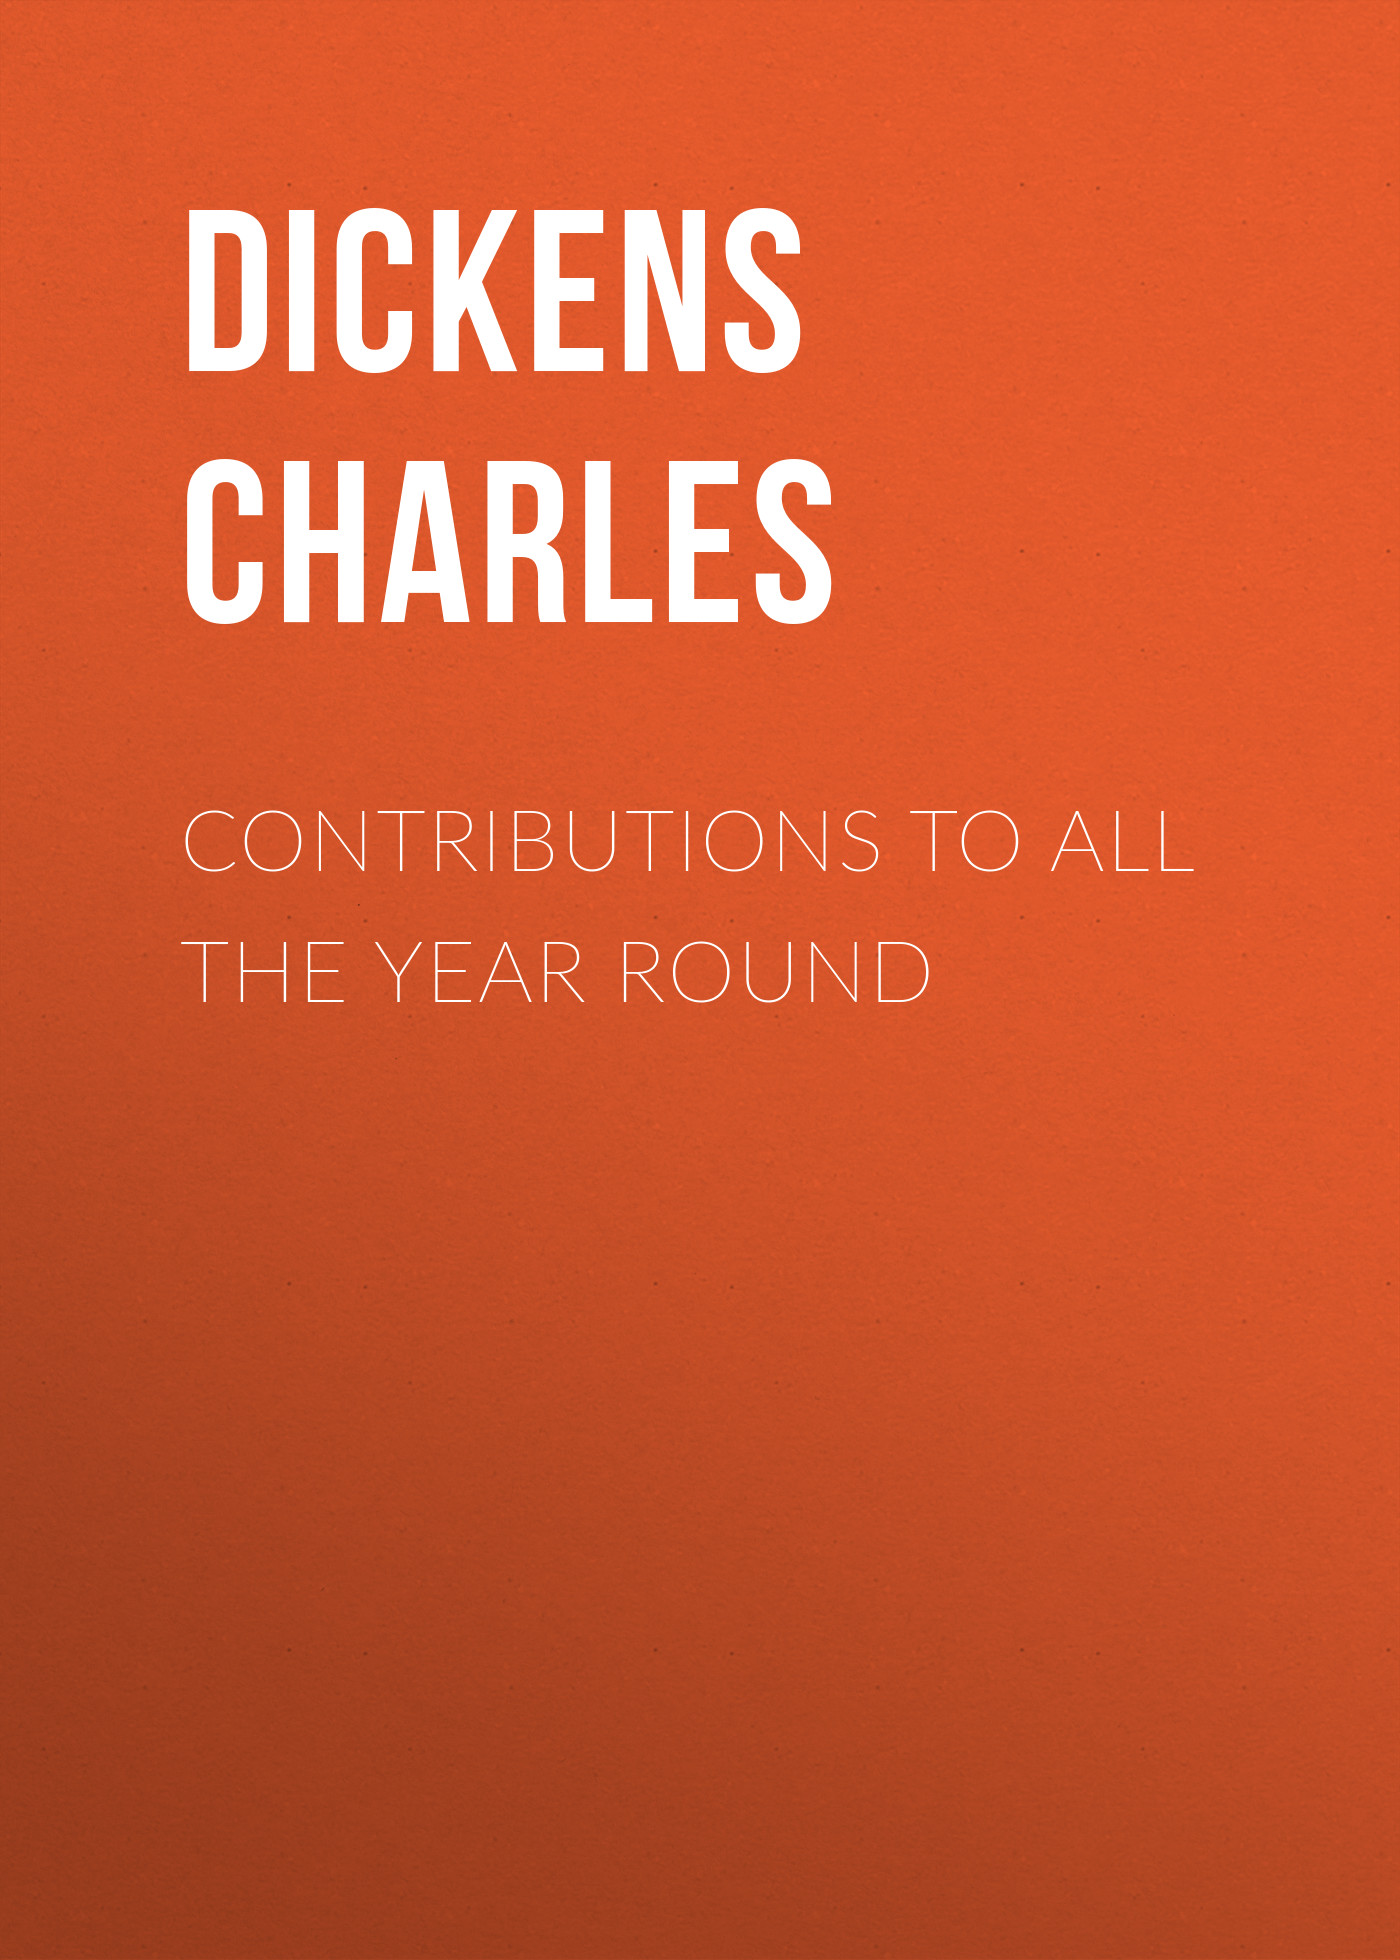 Книга Contributions to All The Year Round из серии , созданная Charles Dickens, может относится к жанру Зарубежная старинная литература, Зарубежная классика. Стоимость электронной книги Contributions to All The Year Round с идентификатором 25092076 составляет 0 руб.